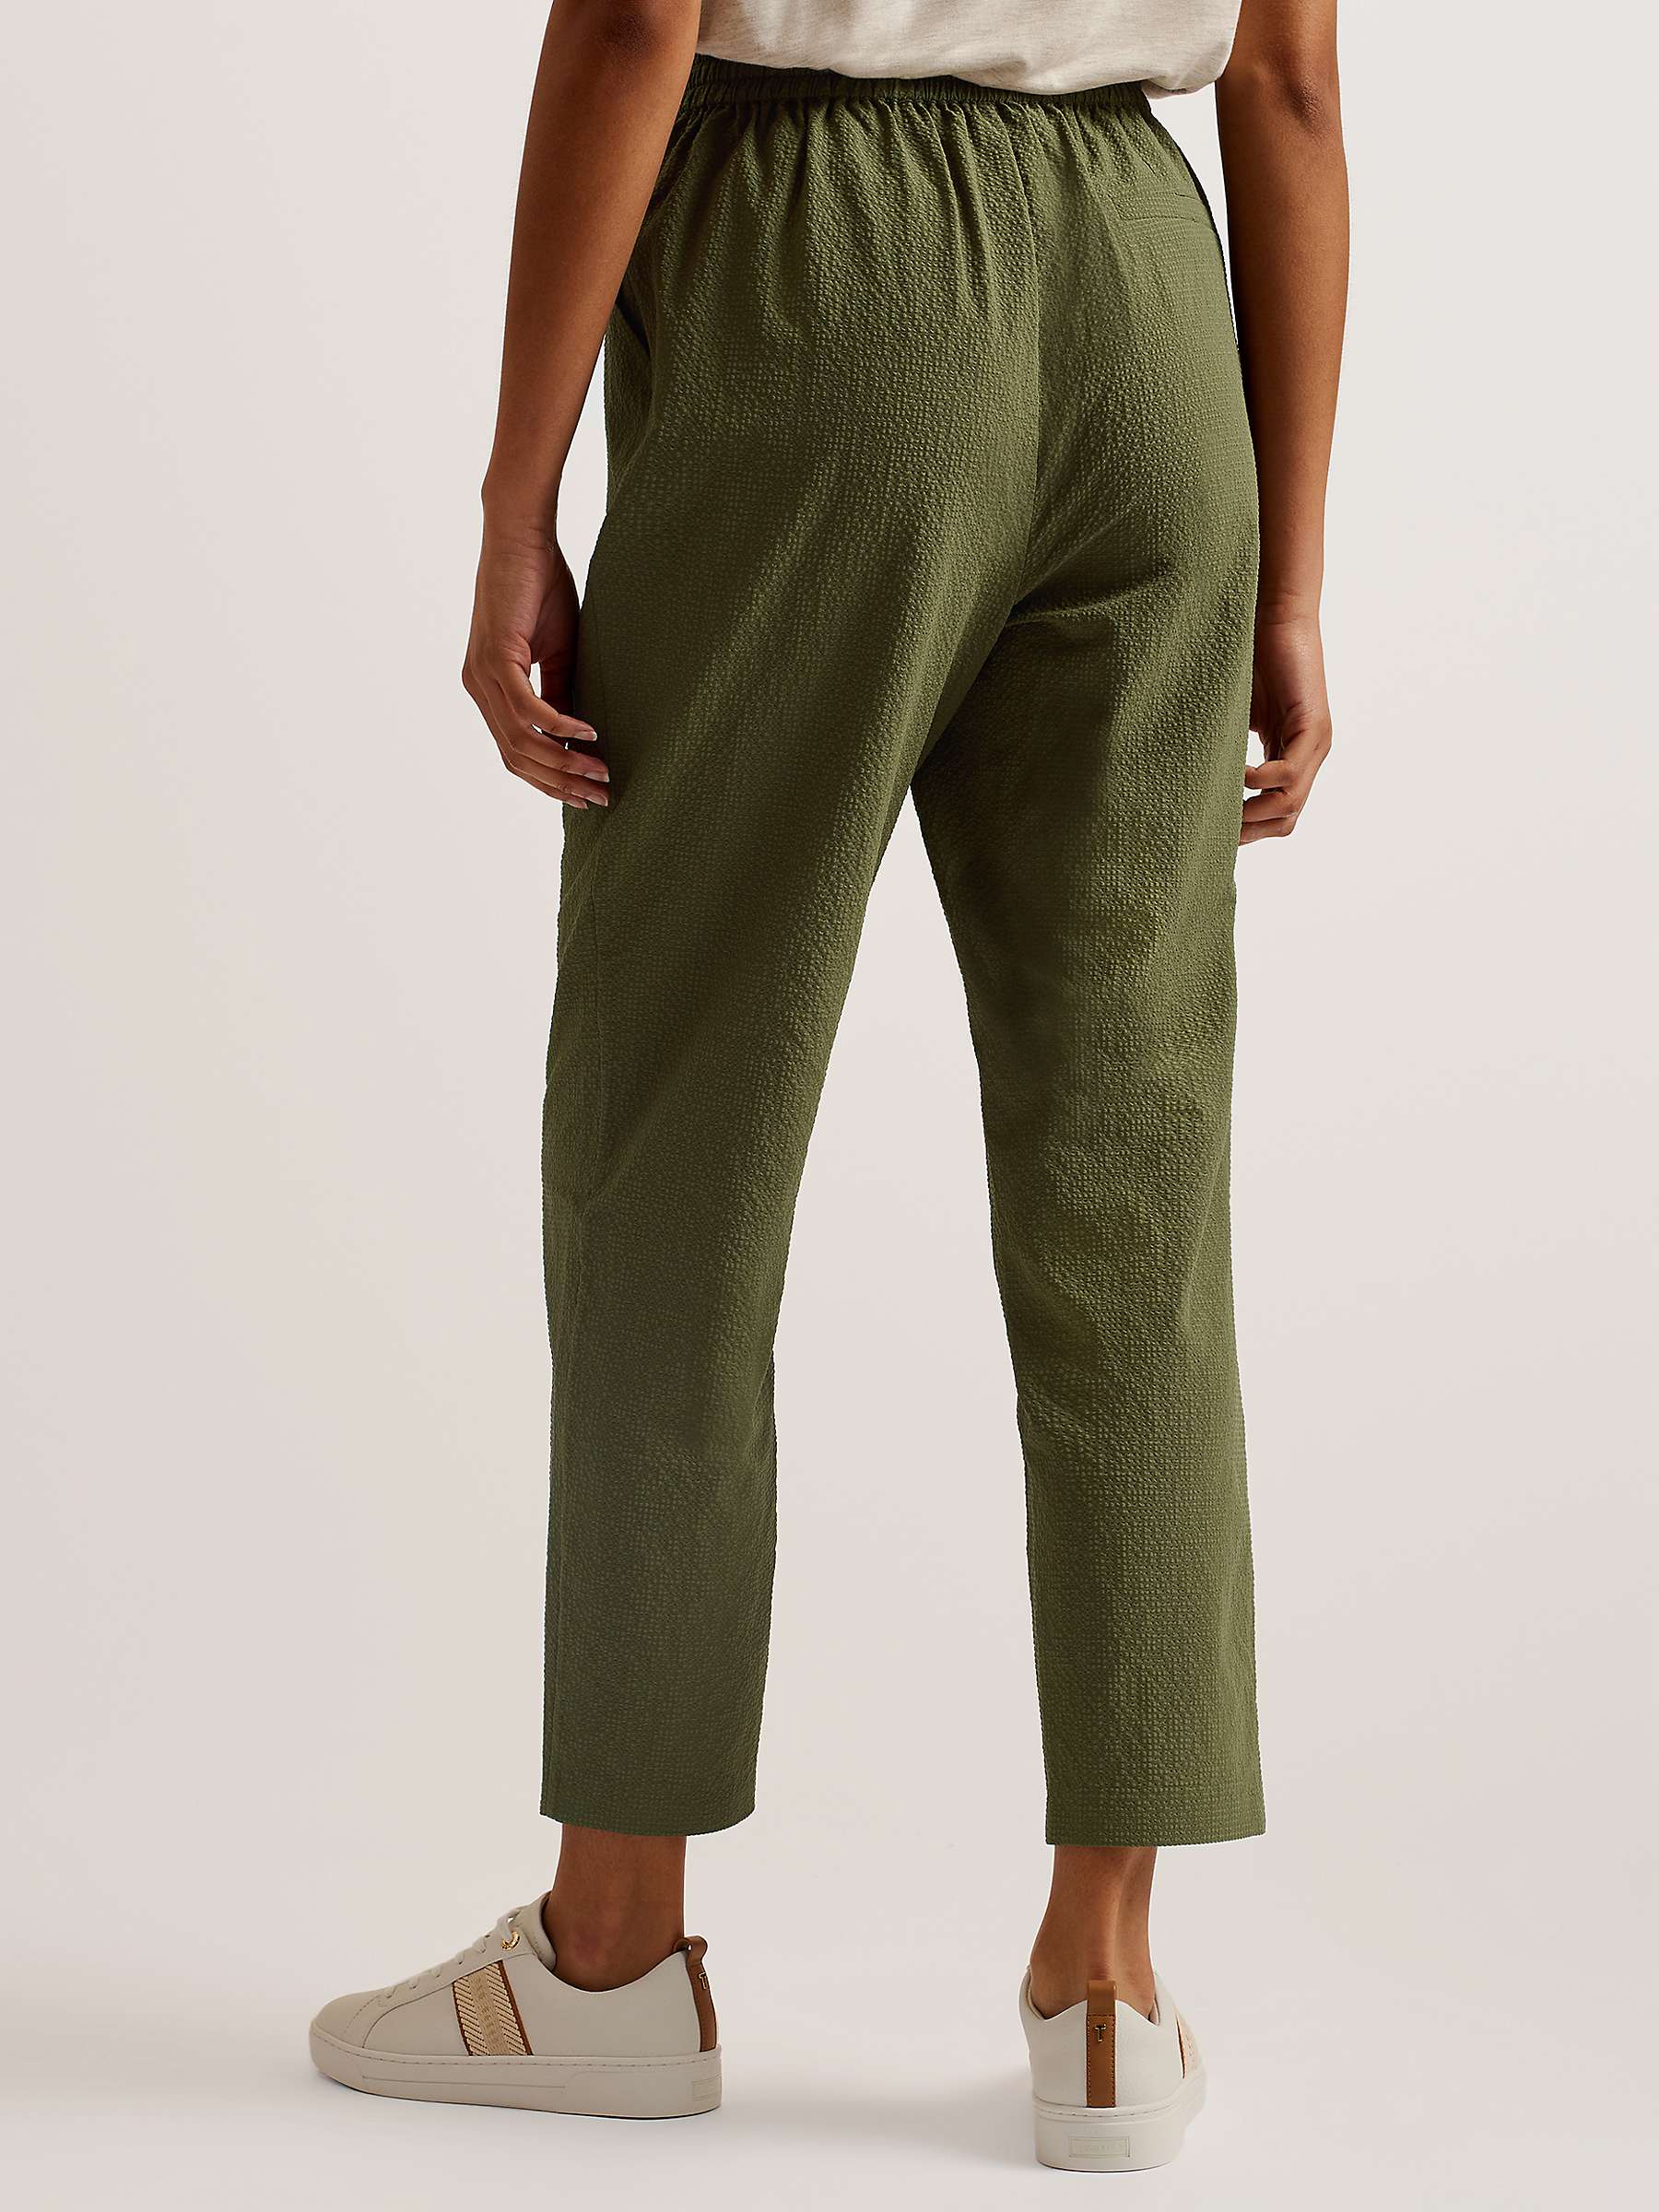 Buy Ted Baker Morasco Ankle Grazer Trousers, Green Khaki Online at johnlewis.com